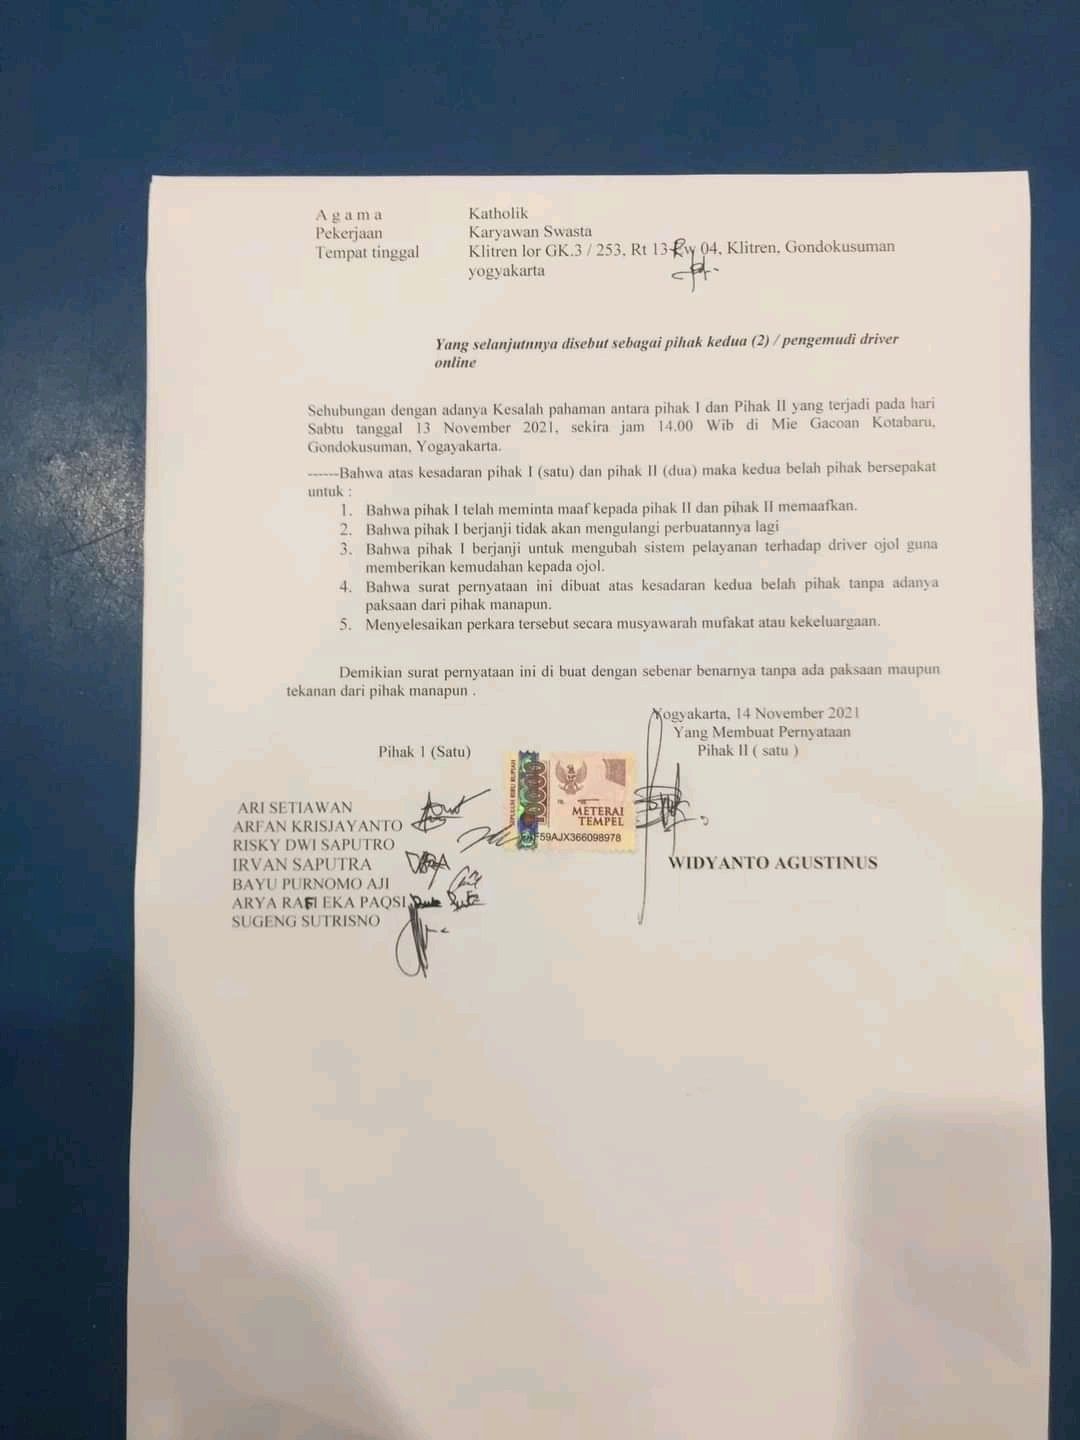 surat pernyataan dari ojol dan Mie Gacoan Jogja.